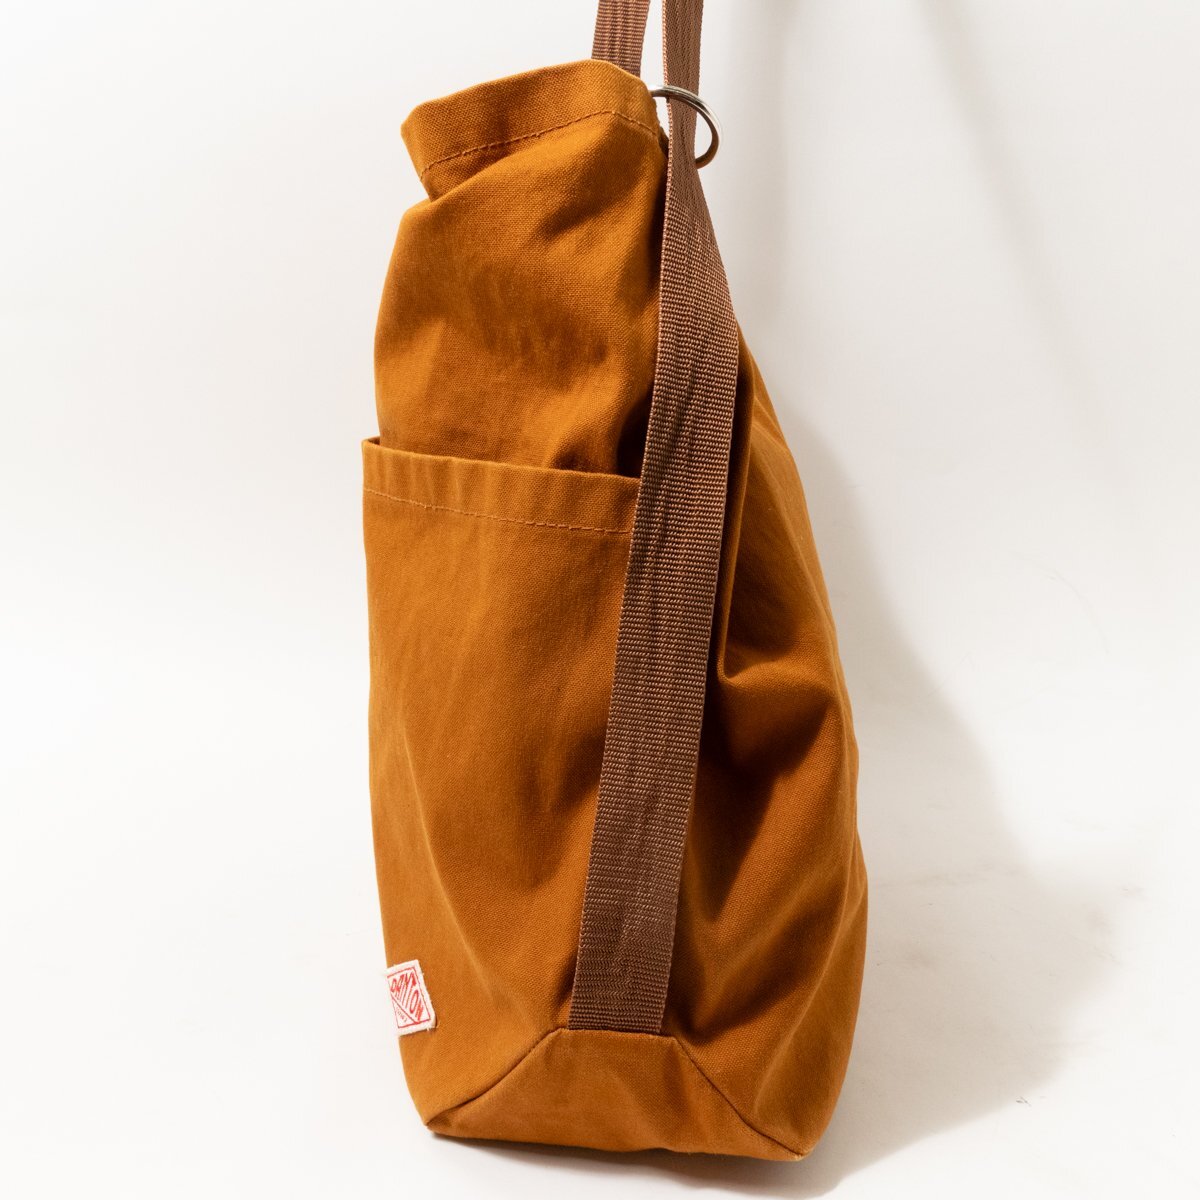 [1 jpy start ]DANTON Dan ton 2way shoulder bag rucksack backpack canvas Camel Brown plain casual bag 